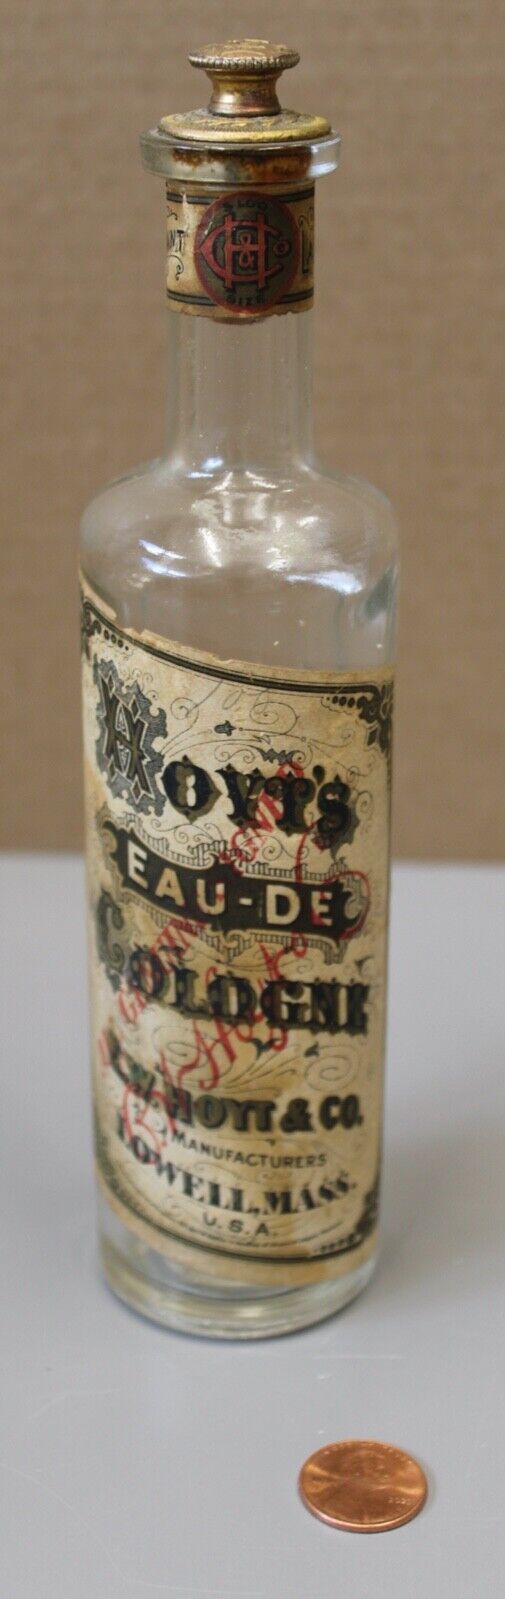 07/05.  Hoyt's Eau-De Cologne 5oz. Glass Bottle with Original Stopper and Label